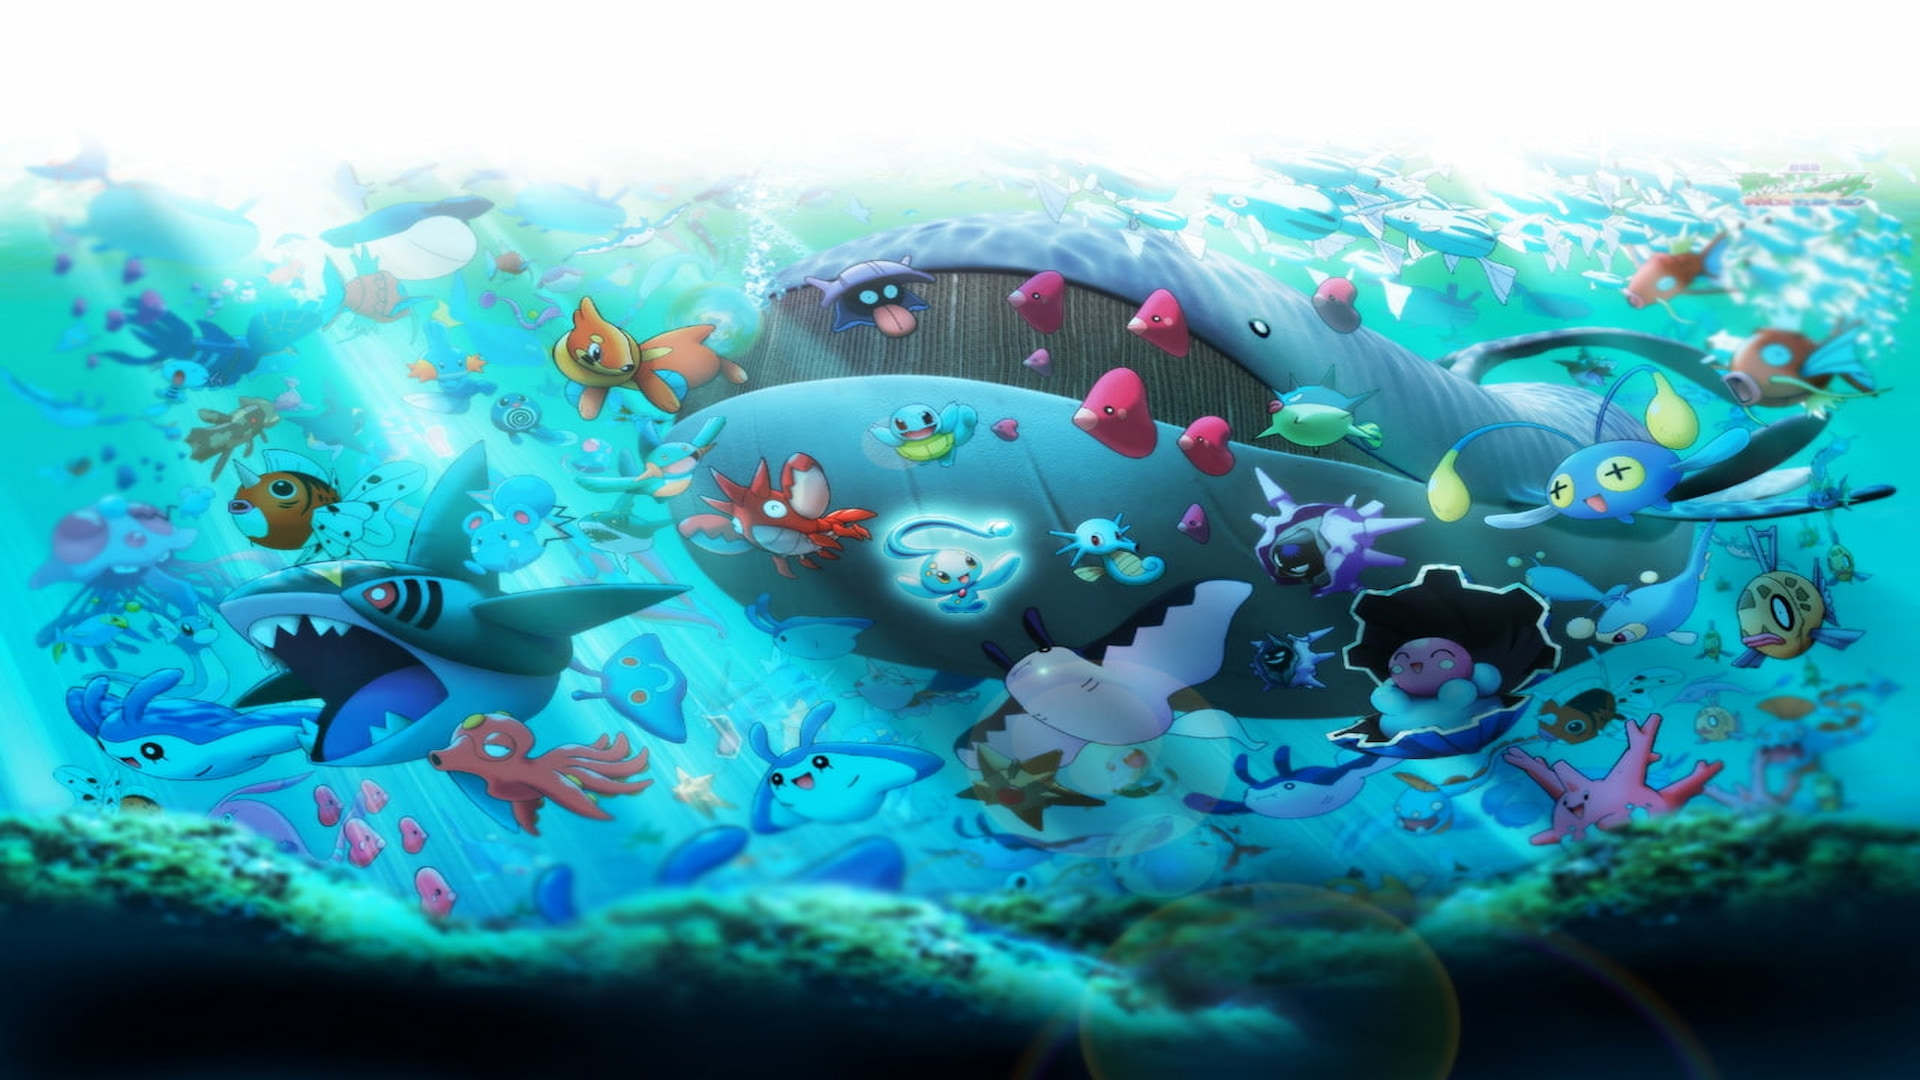 Papel de parede : ilustração, videogames, Fundo azul, Pokemon, embaixo da  agua, círculo, linha, asa, Papel de parede do computador, Invertebrado  2560x1600 - k1p - 228164 - Papel de parede para pc - WallHere